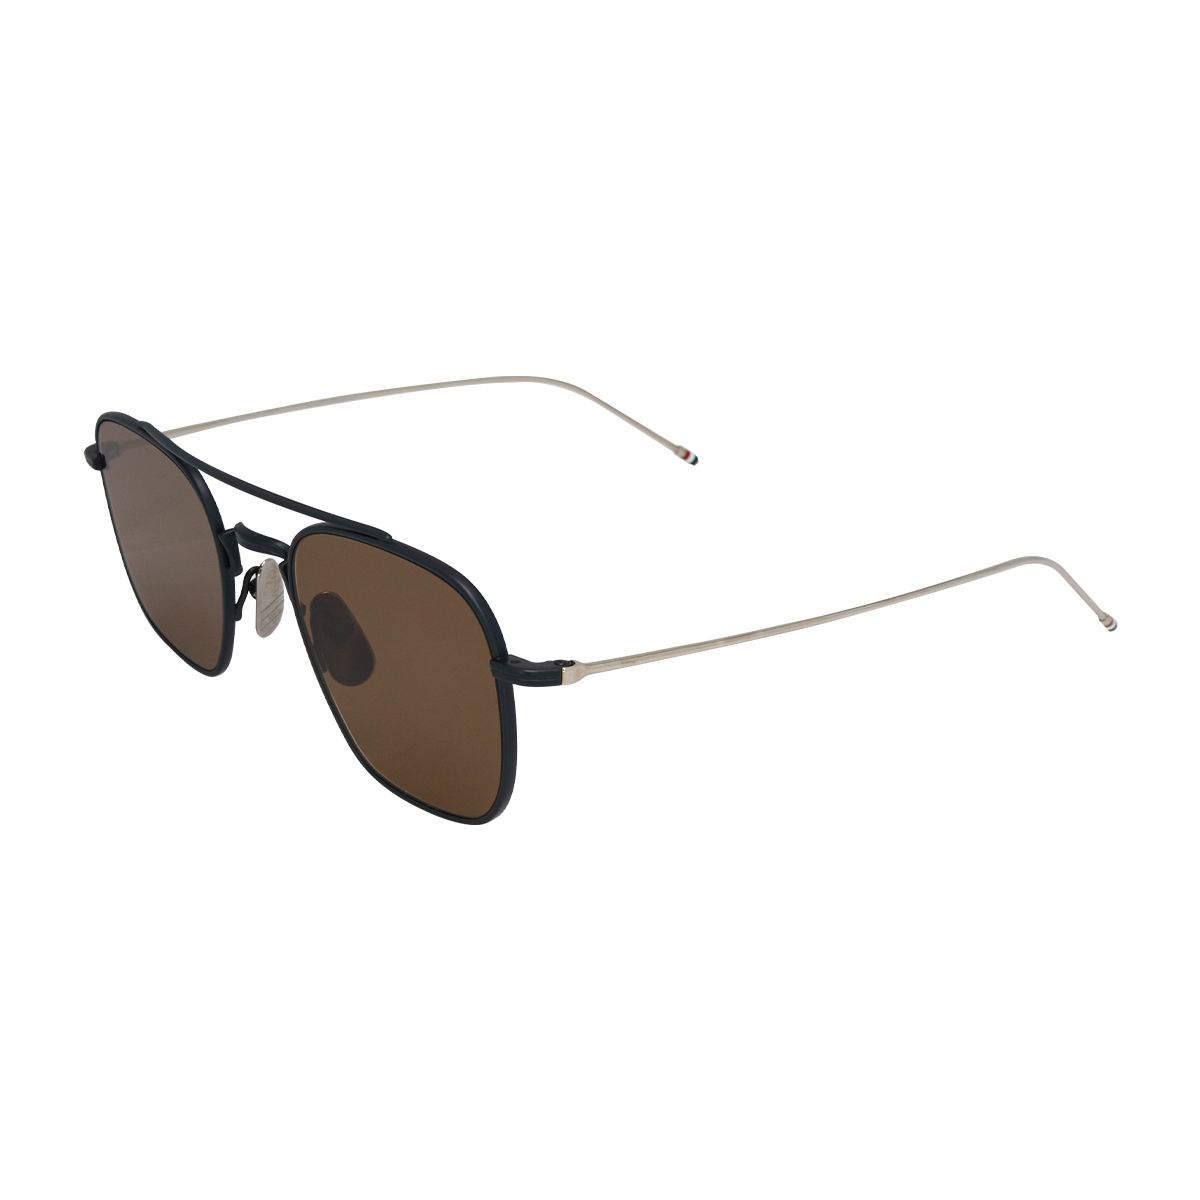 907 Square Sunglasses 3 - size 50